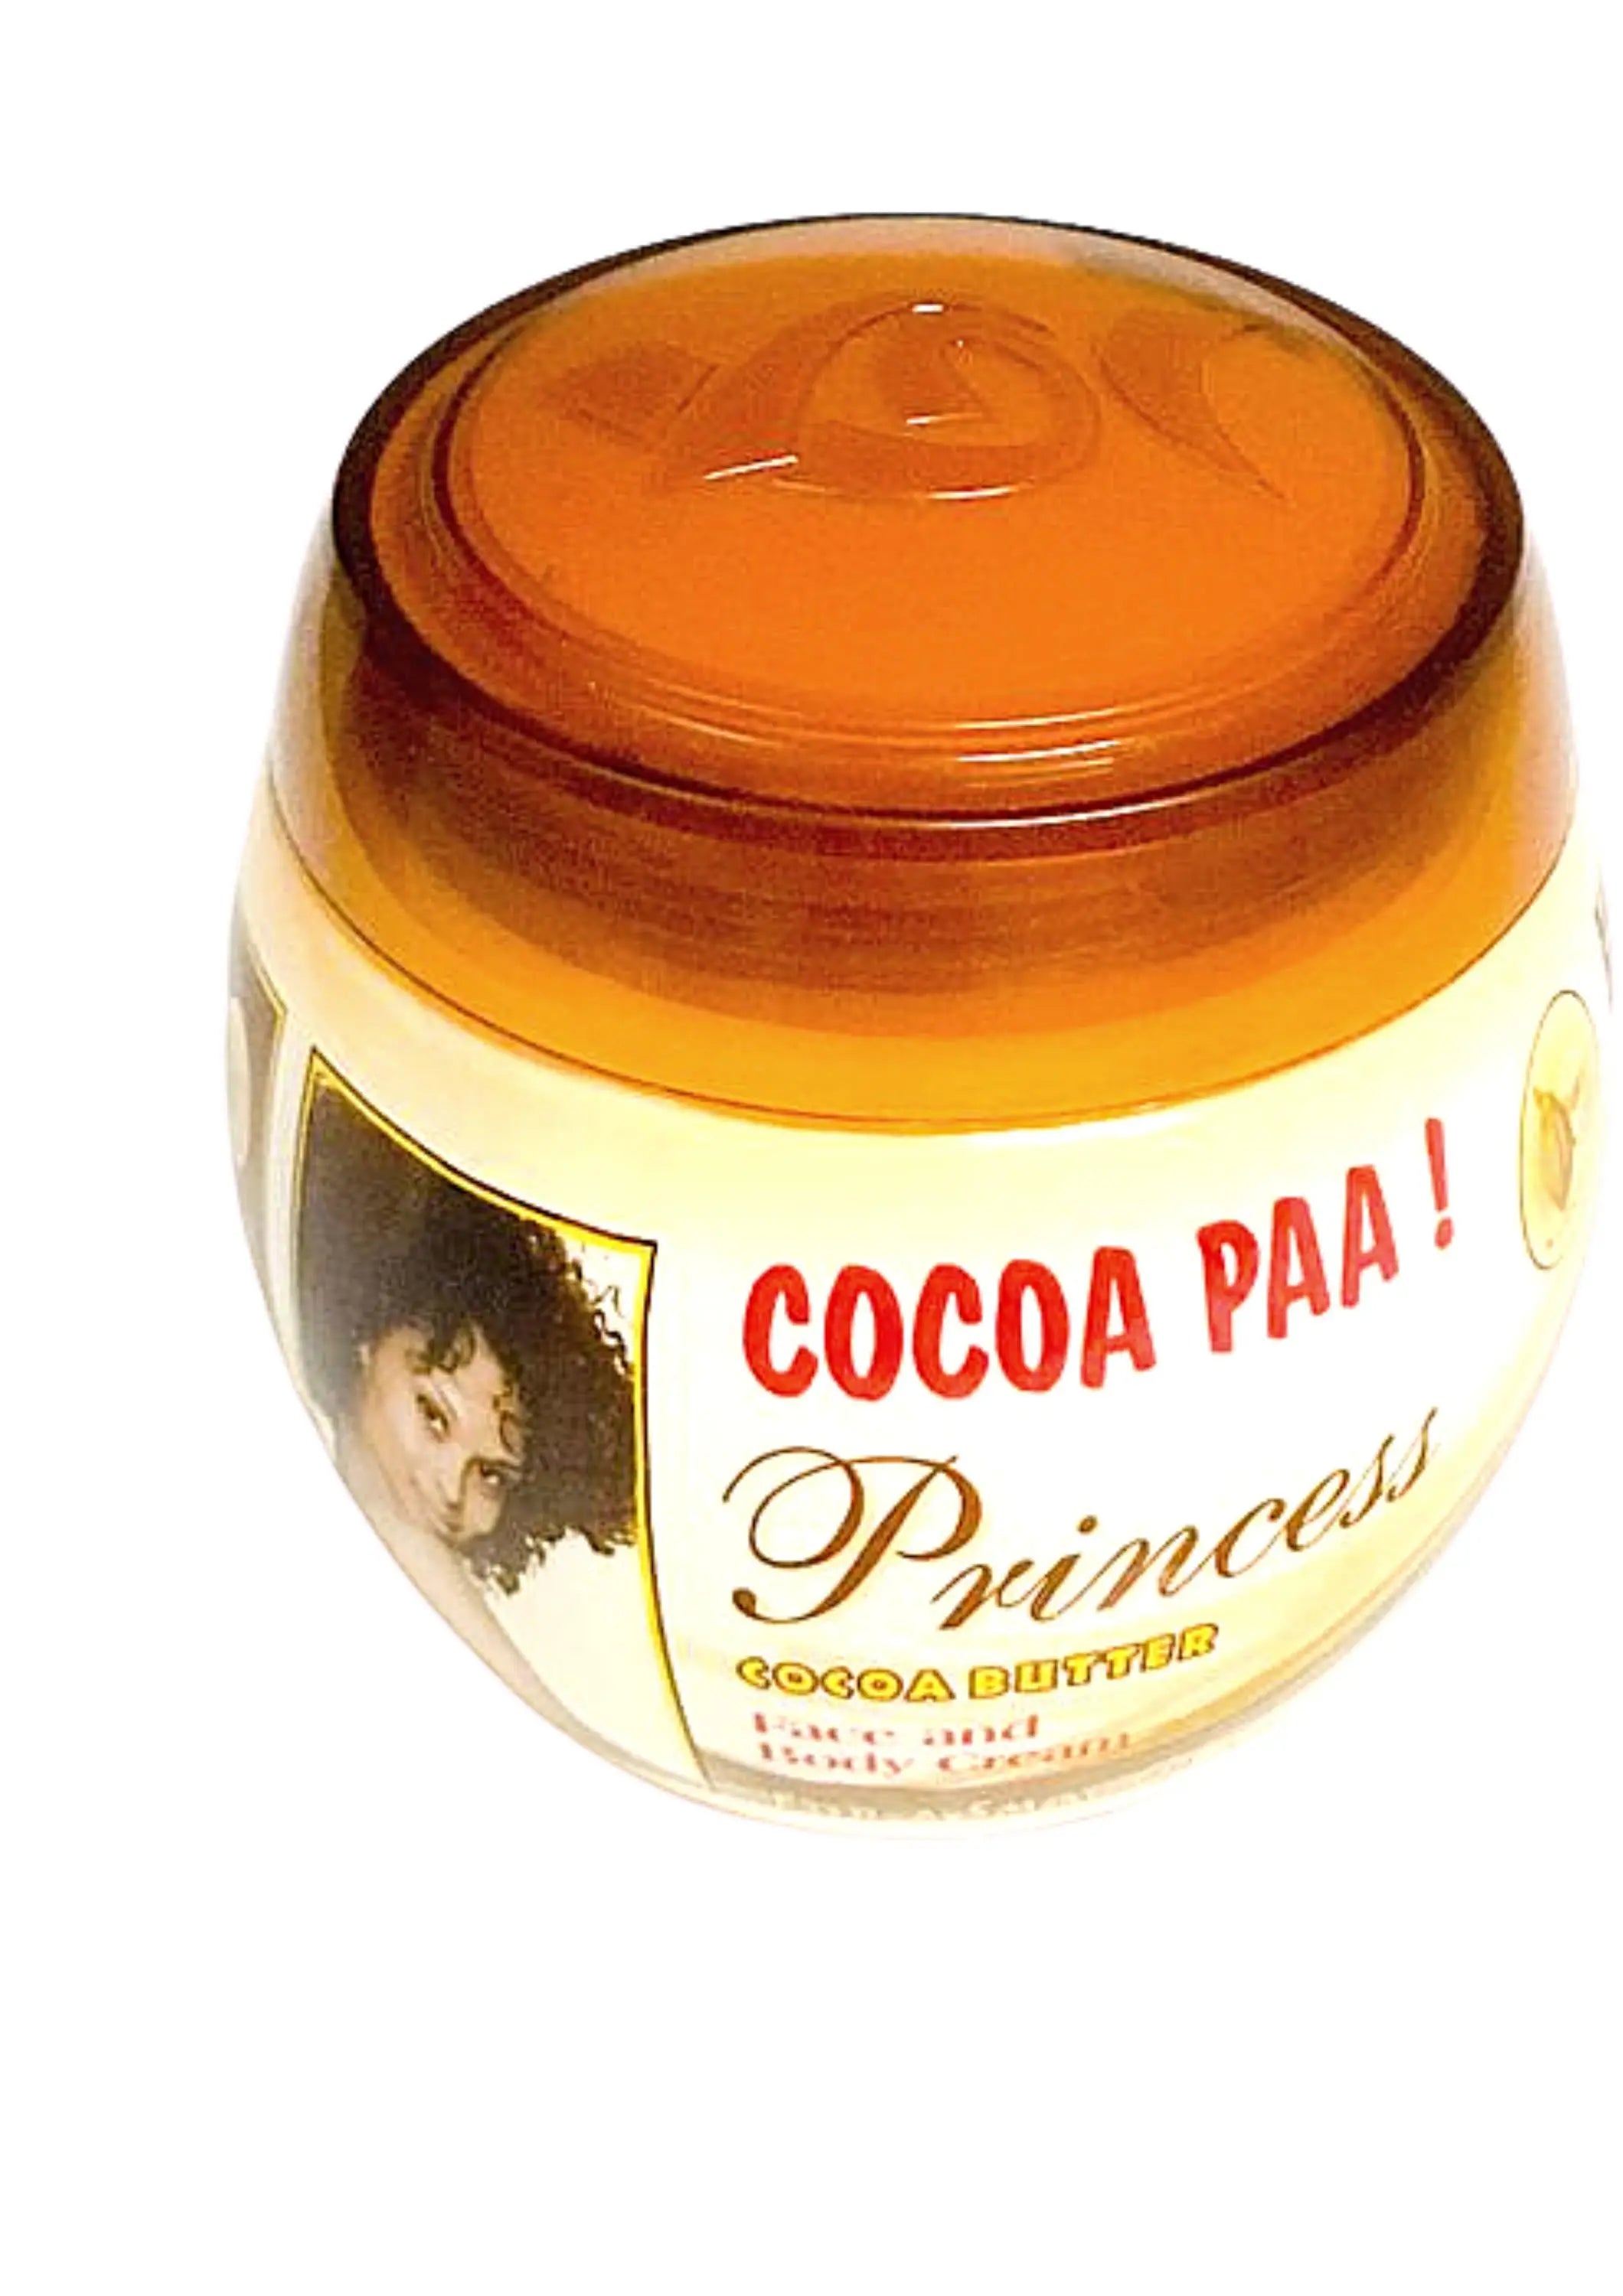 Princess Cocoa Paa Kakaobutter Hand- und Körpercreme 460 ml von Princess Cocoa Paa